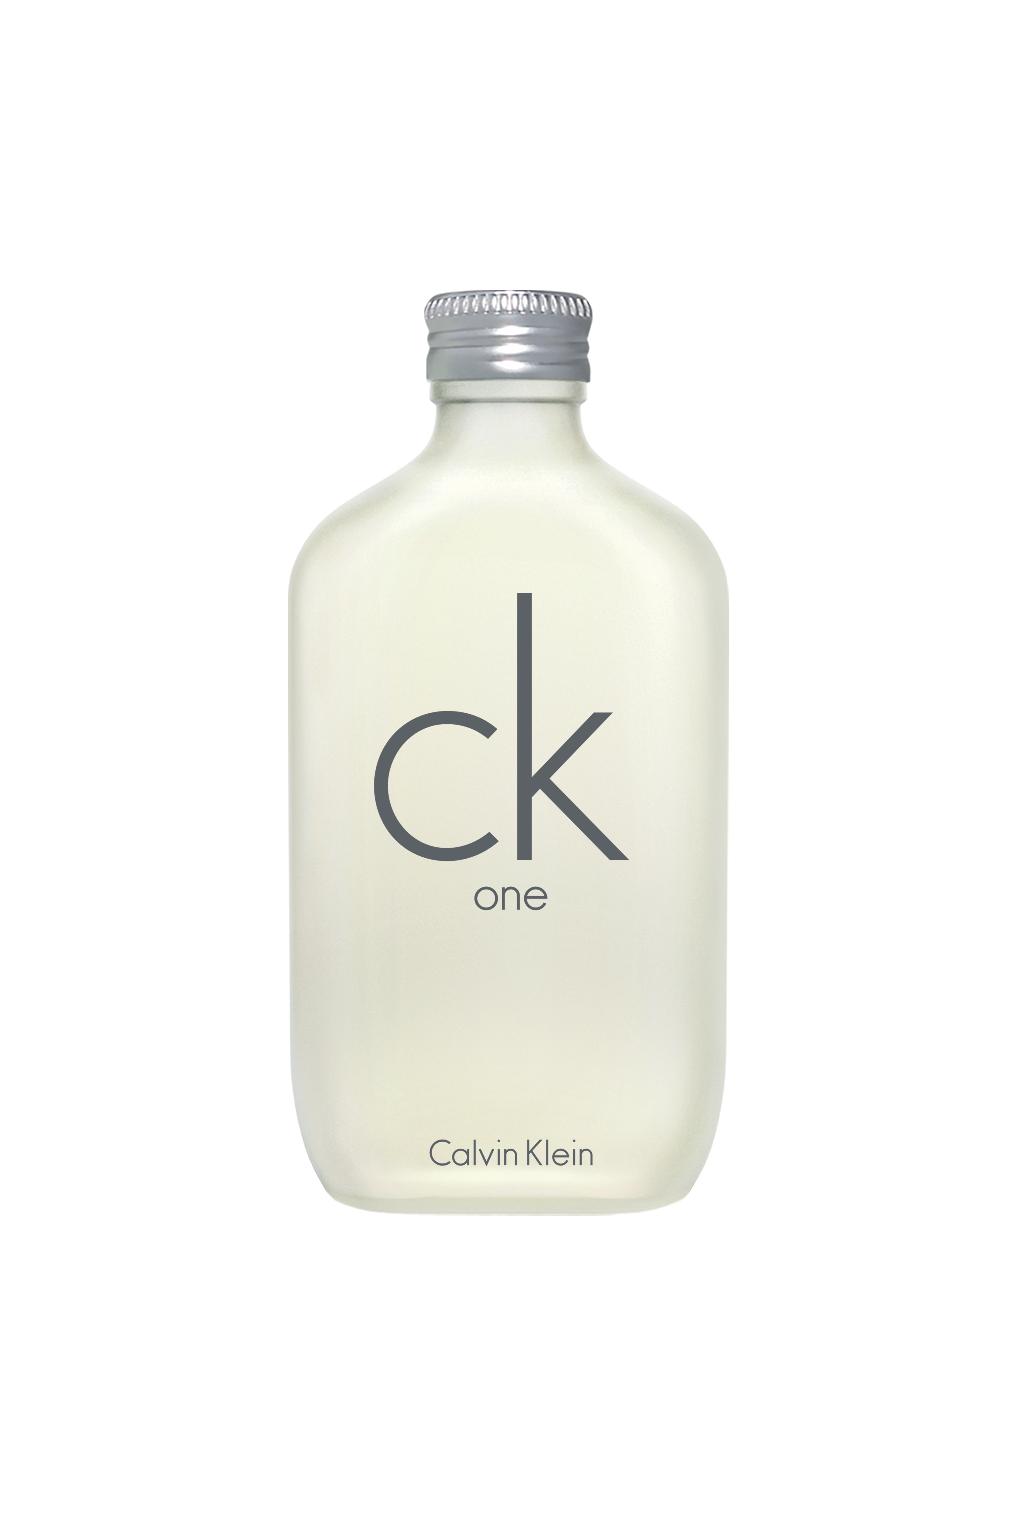 Calvin Klein One Eau de Toilette Spray for Women and Men- 6.7 Oz.